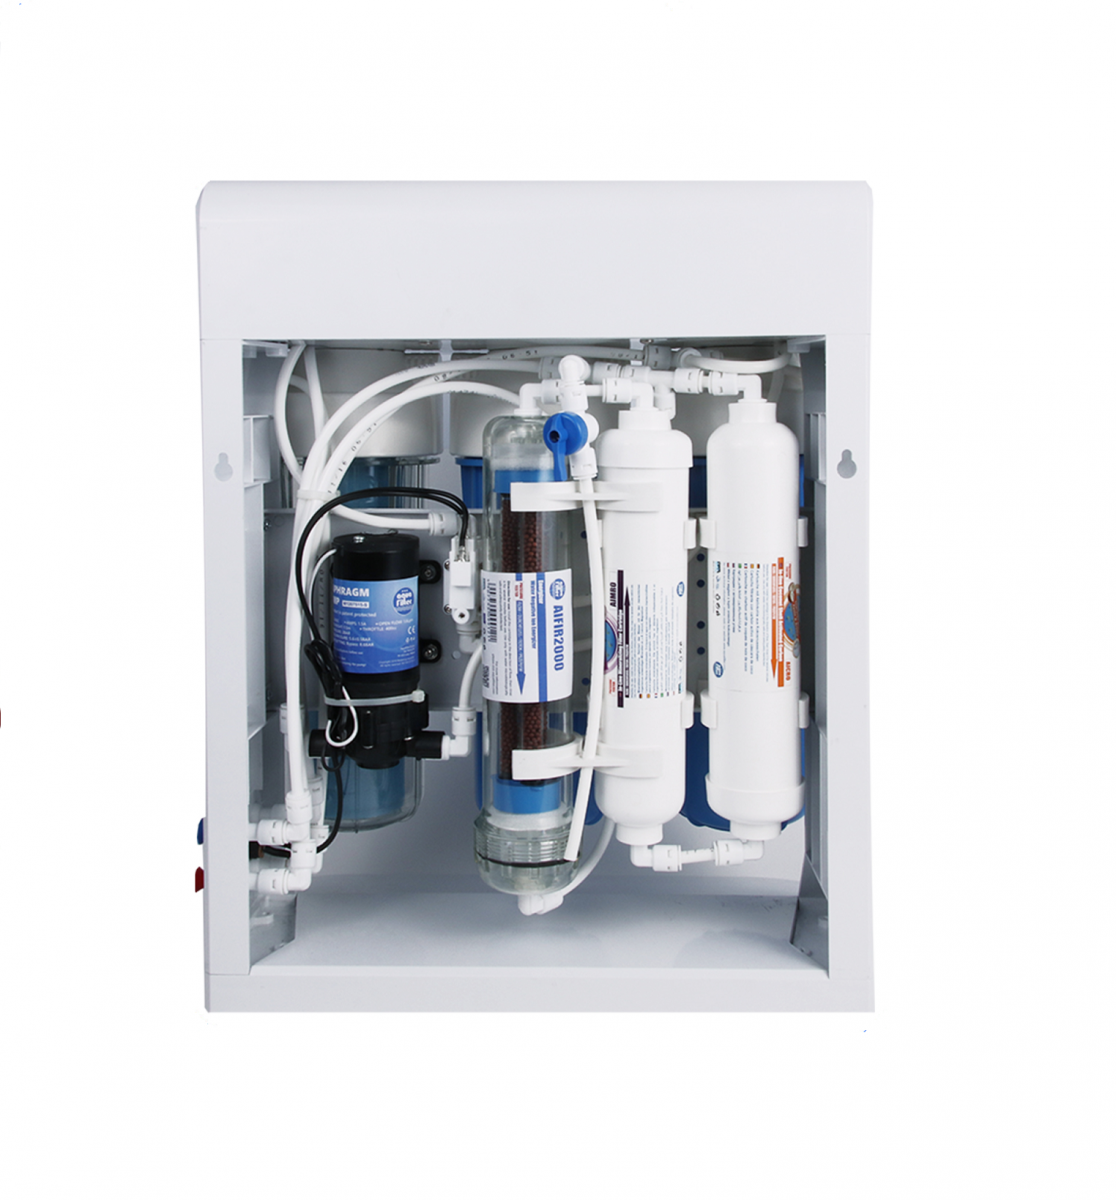 Quy trình bảo dưỡng máy lọc nước tại nhà